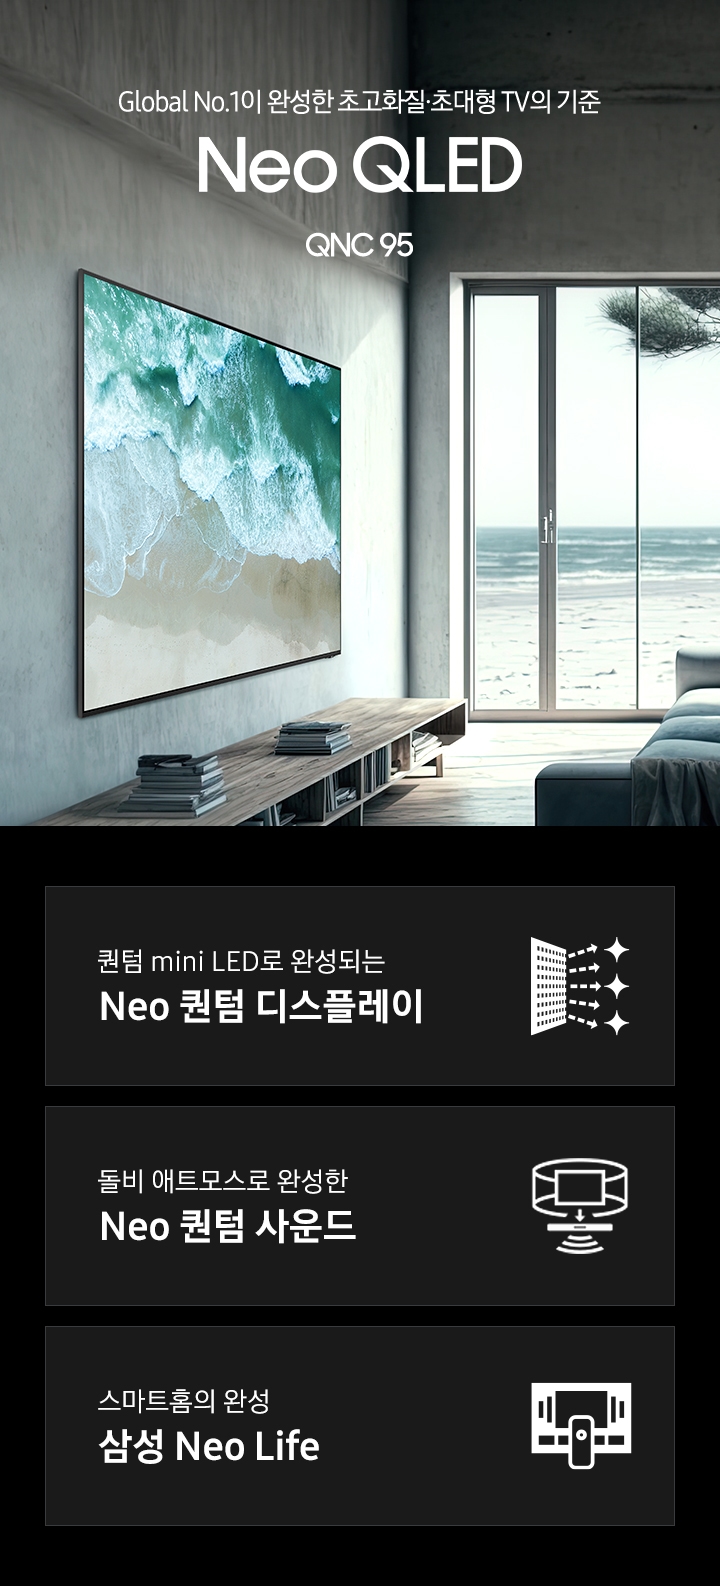 거실 좌측 벽면에 TV가 설치되어 있습니다. 스크린에는 파도치는 해변의 모습이 보입니다. TV 앞에는 어두운 색에 쇼파가 있습니다. Global No.1이 만든 새로운 화질의 시작 Neo QLED 4K QNC95 KV 입니다. 하단 3 POD 에는 퀀텀 mini LED로 완성되는 Neo 퀀텀 디스플레이 문구와 반짝이는 디스플레이 아이콘, 돌비 애트모스로 완성한 Neo 퀀텀 사운드 문구와 TV 아이콘에서 사운드 음파를 표현한 아이콘, 스마트홈의 완성 삼성 Neo Life 문구와 TV와 리모컨, TV 속 컨텐츠들을 표현한 아이콘이 있습니다.